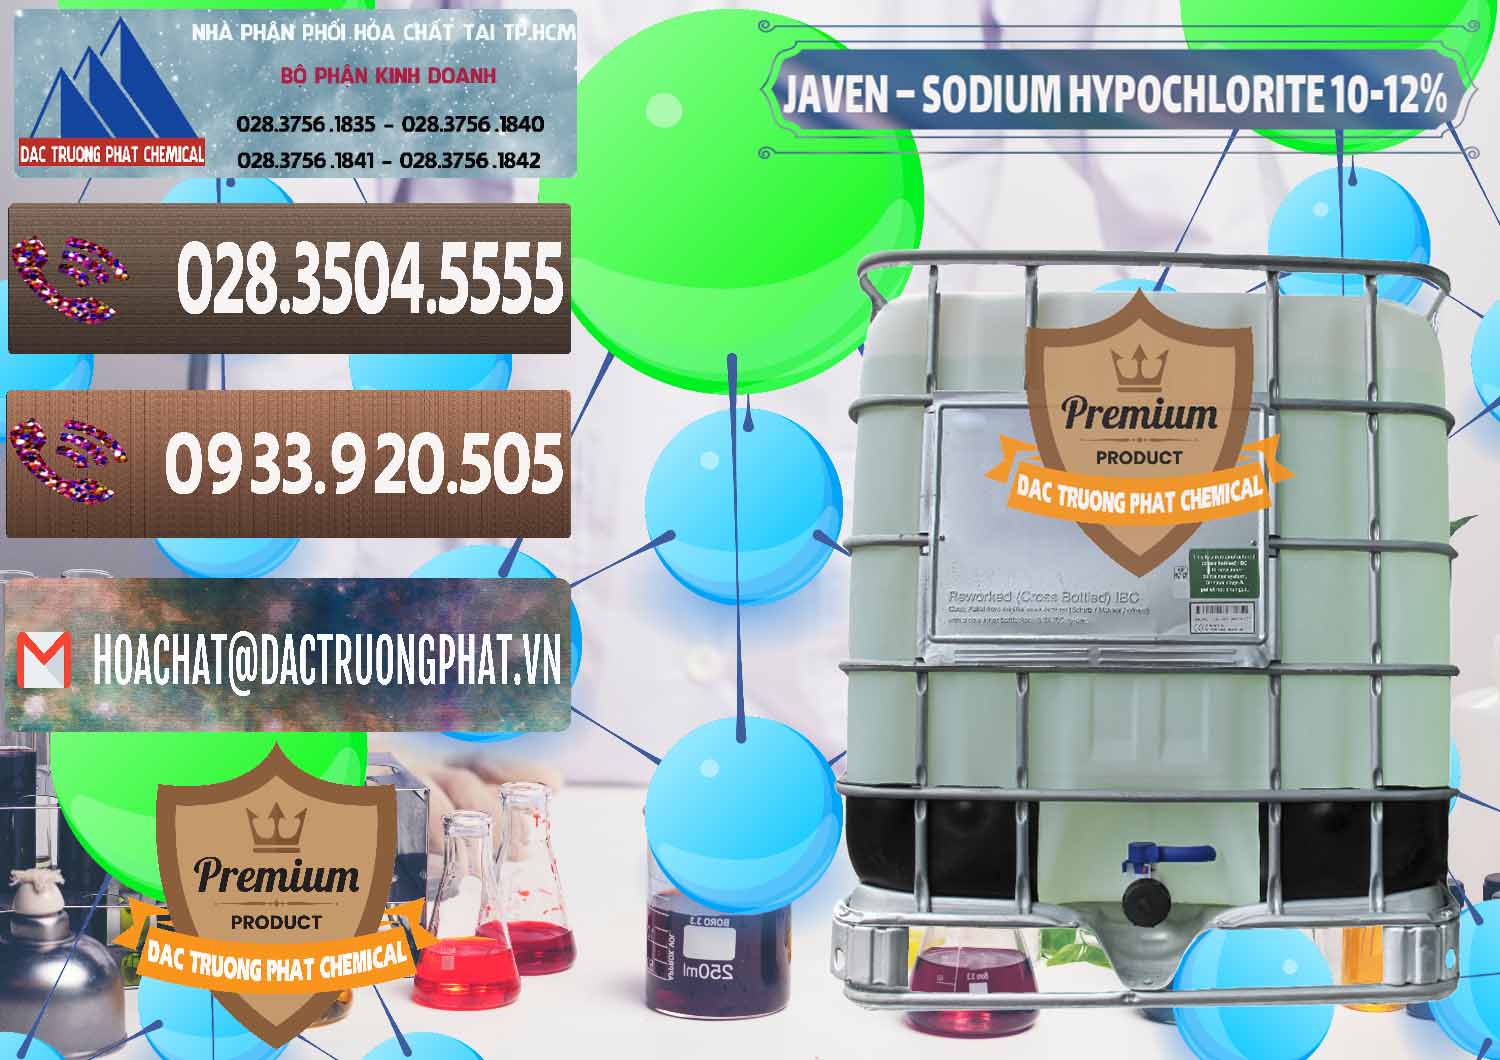 Kinh doanh và phân phối Javen - Sodium Hypochlorite 10-12% Việt Nam - 0188 - Công ty bán _ phân phối hóa chất tại TP.HCM - hoachatviet.net